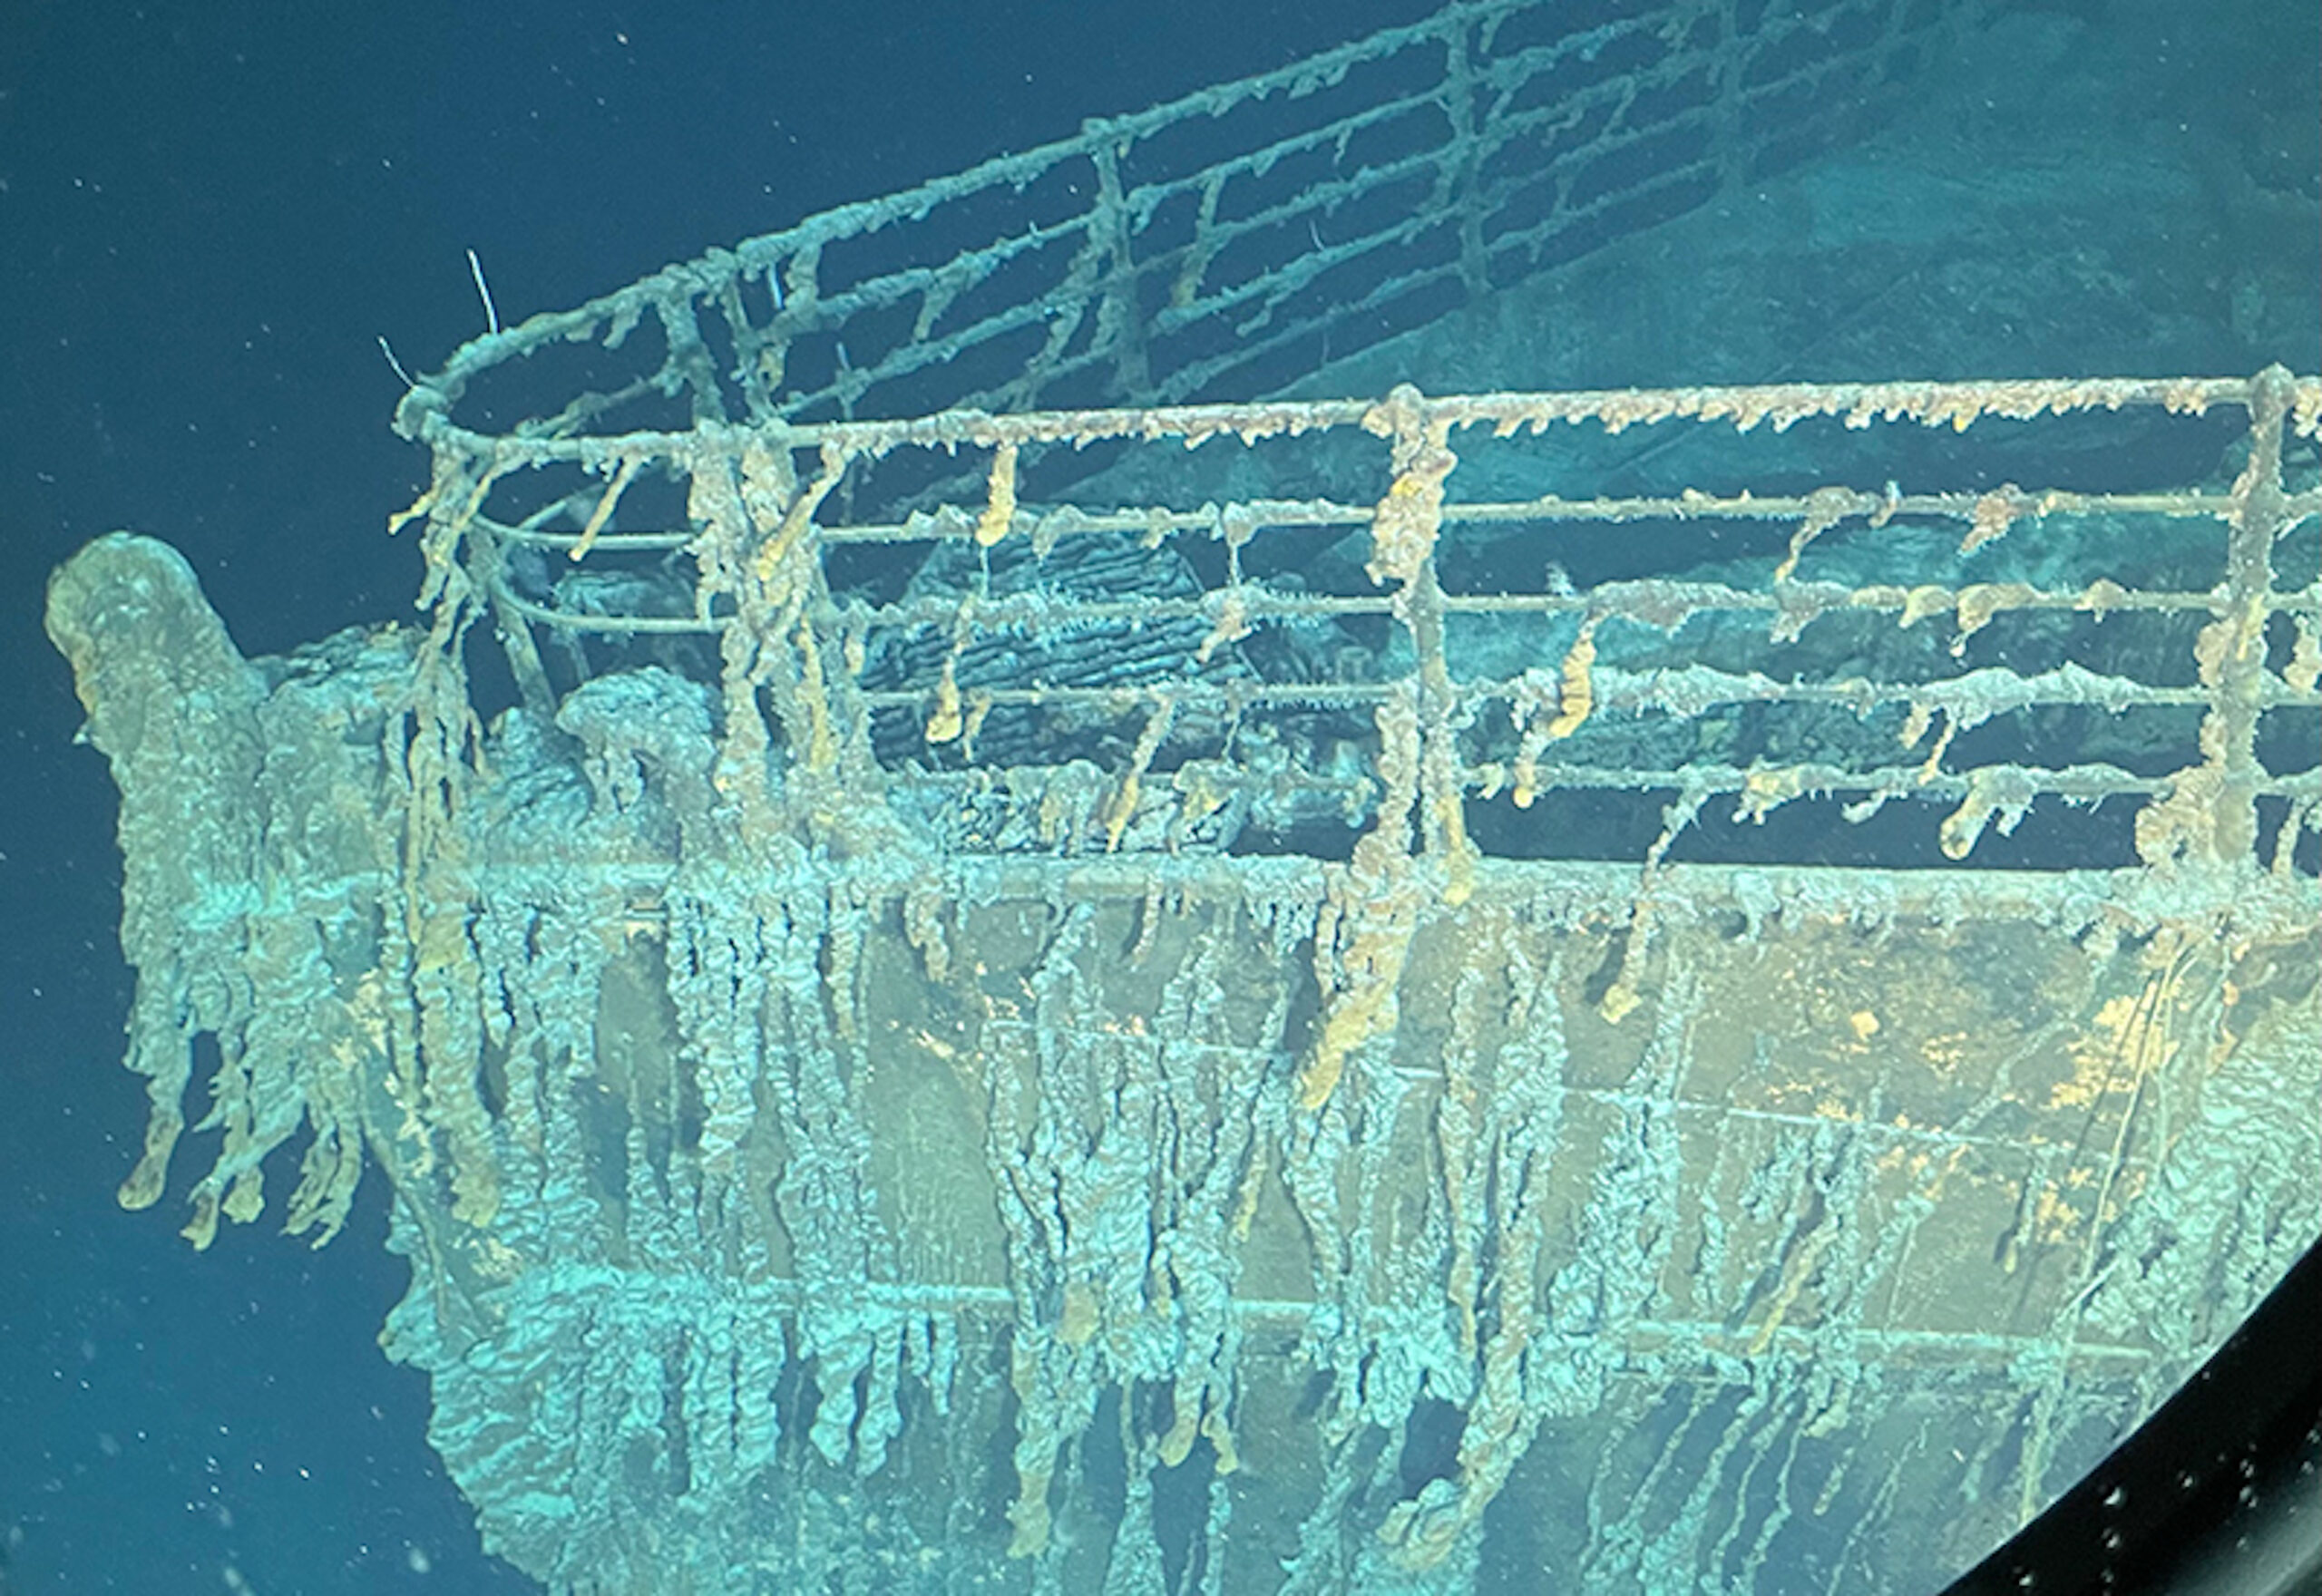 OceanGate Titanic Expediition